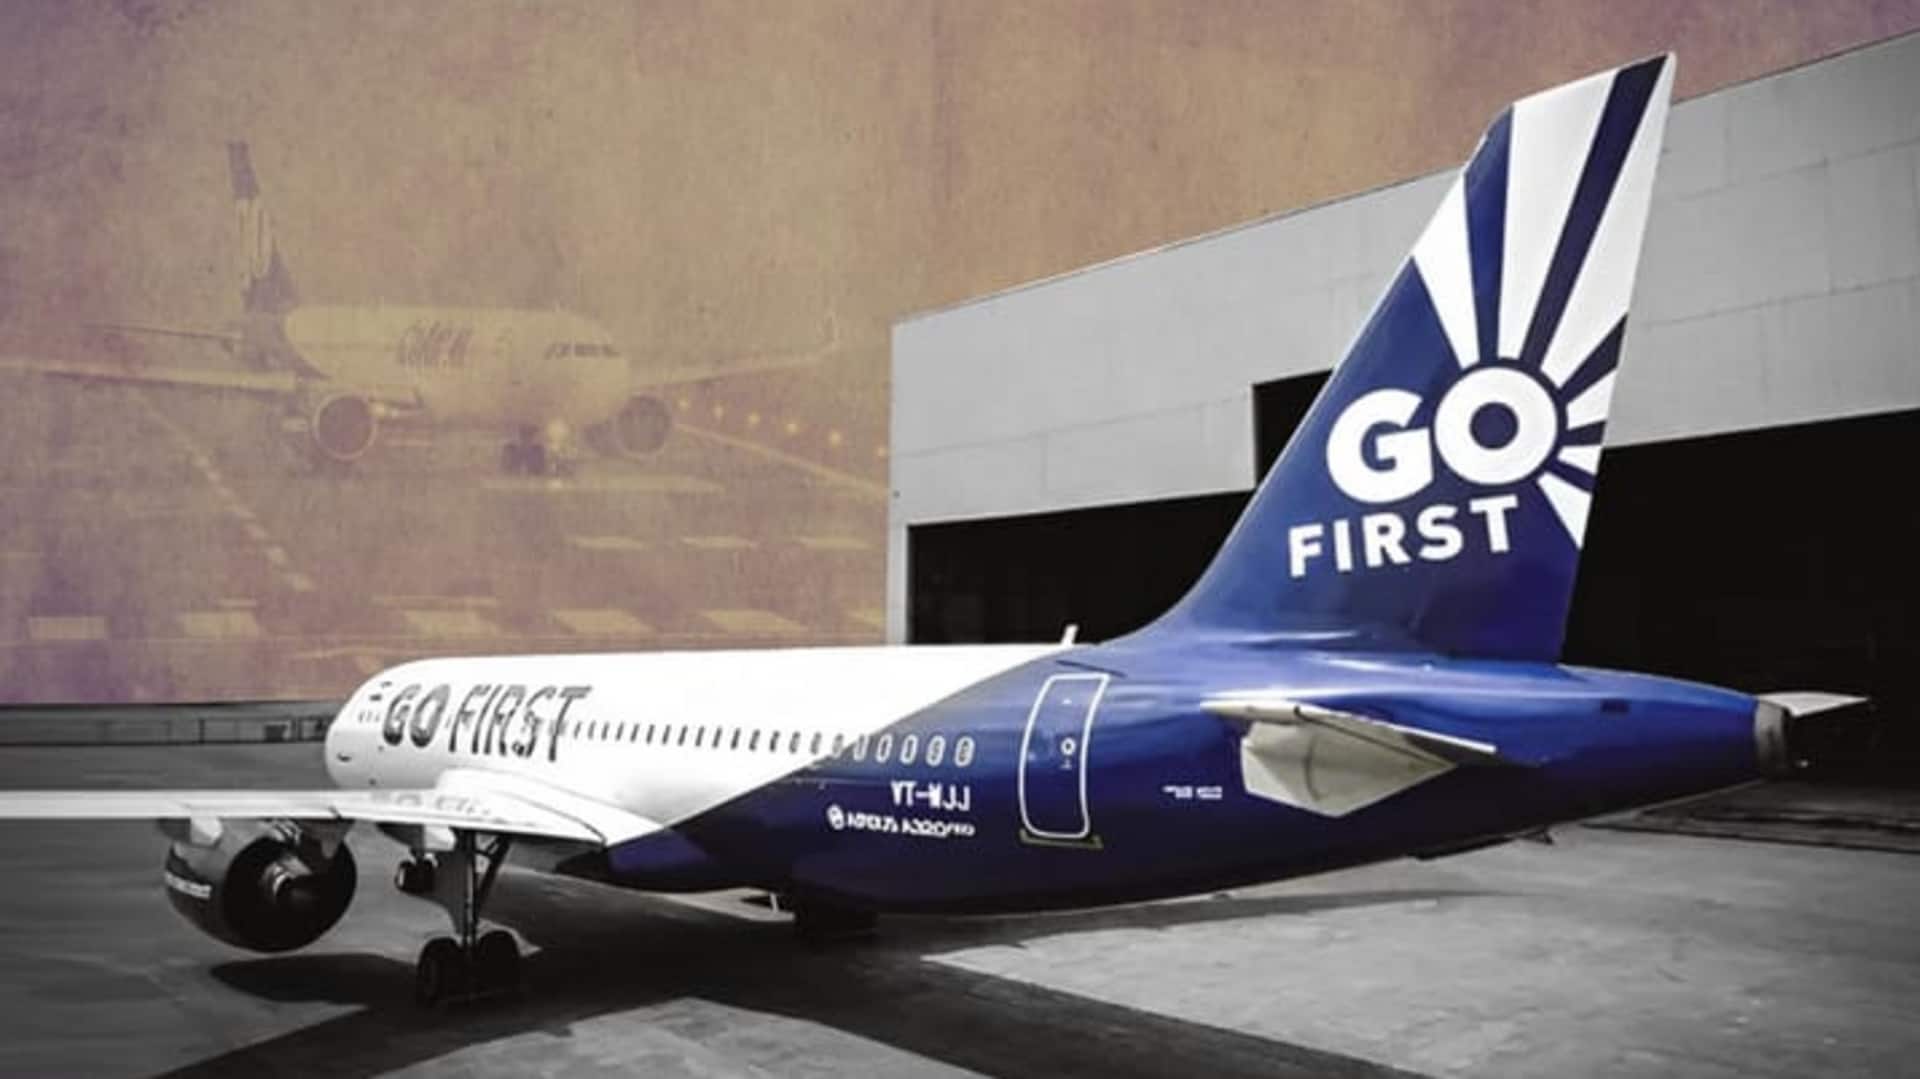 DGCA ने कुछ शर्तों के साथ गो फर्स्ट एयरलाइन को दी संचालन की अनुमति 